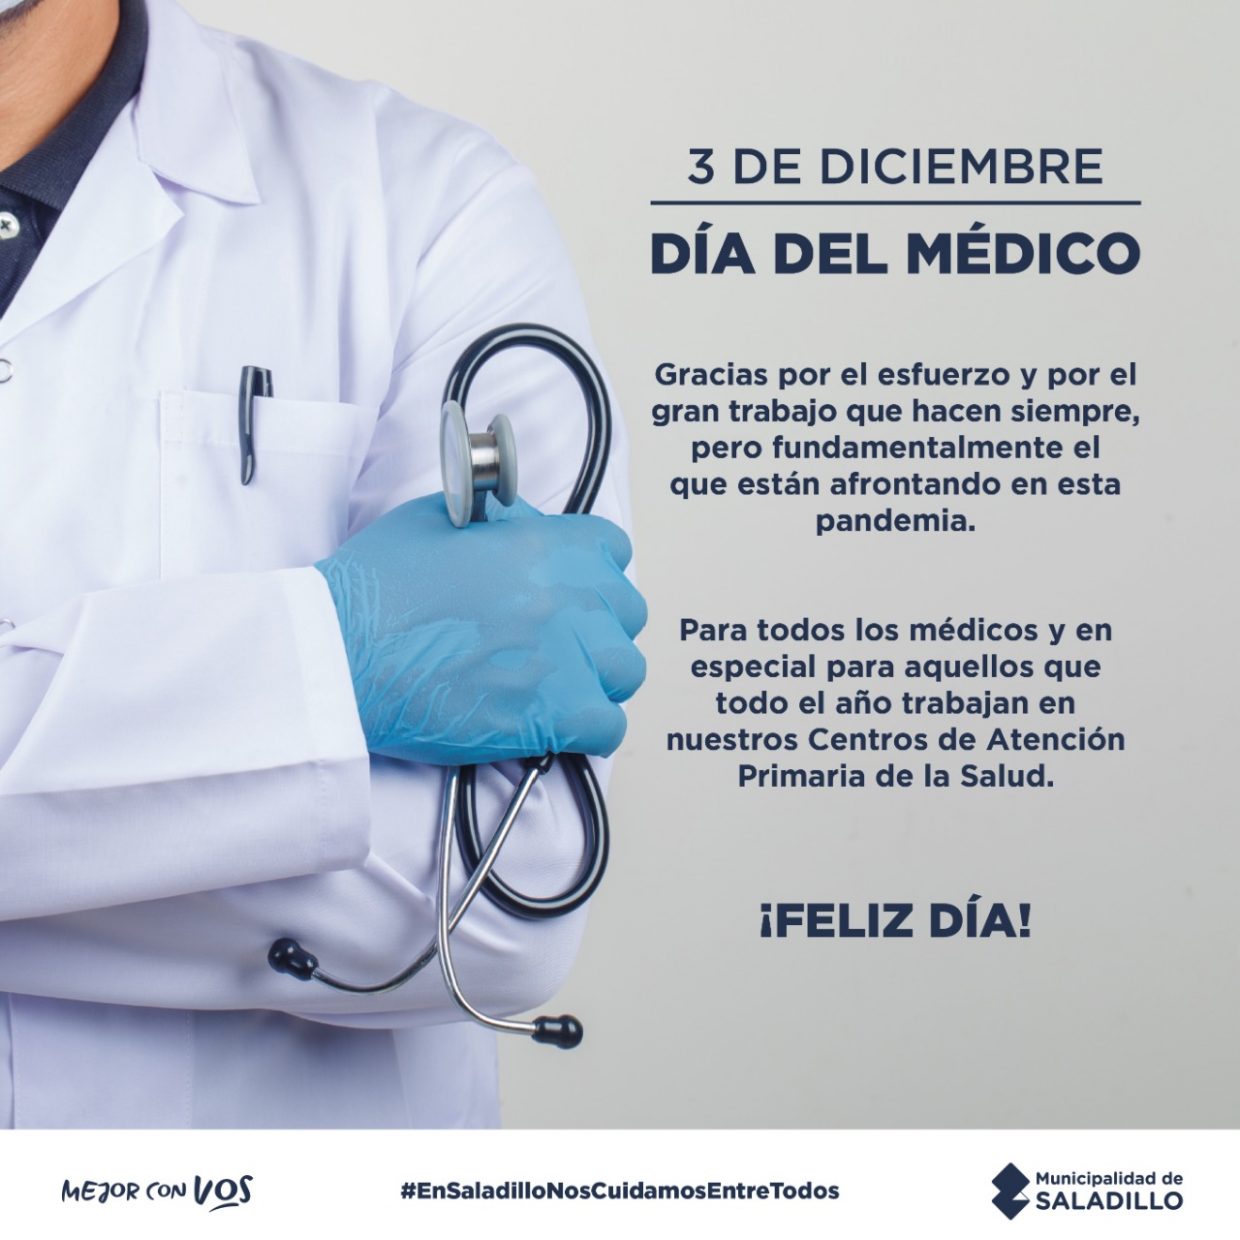 3 de diciembre: Día del médico